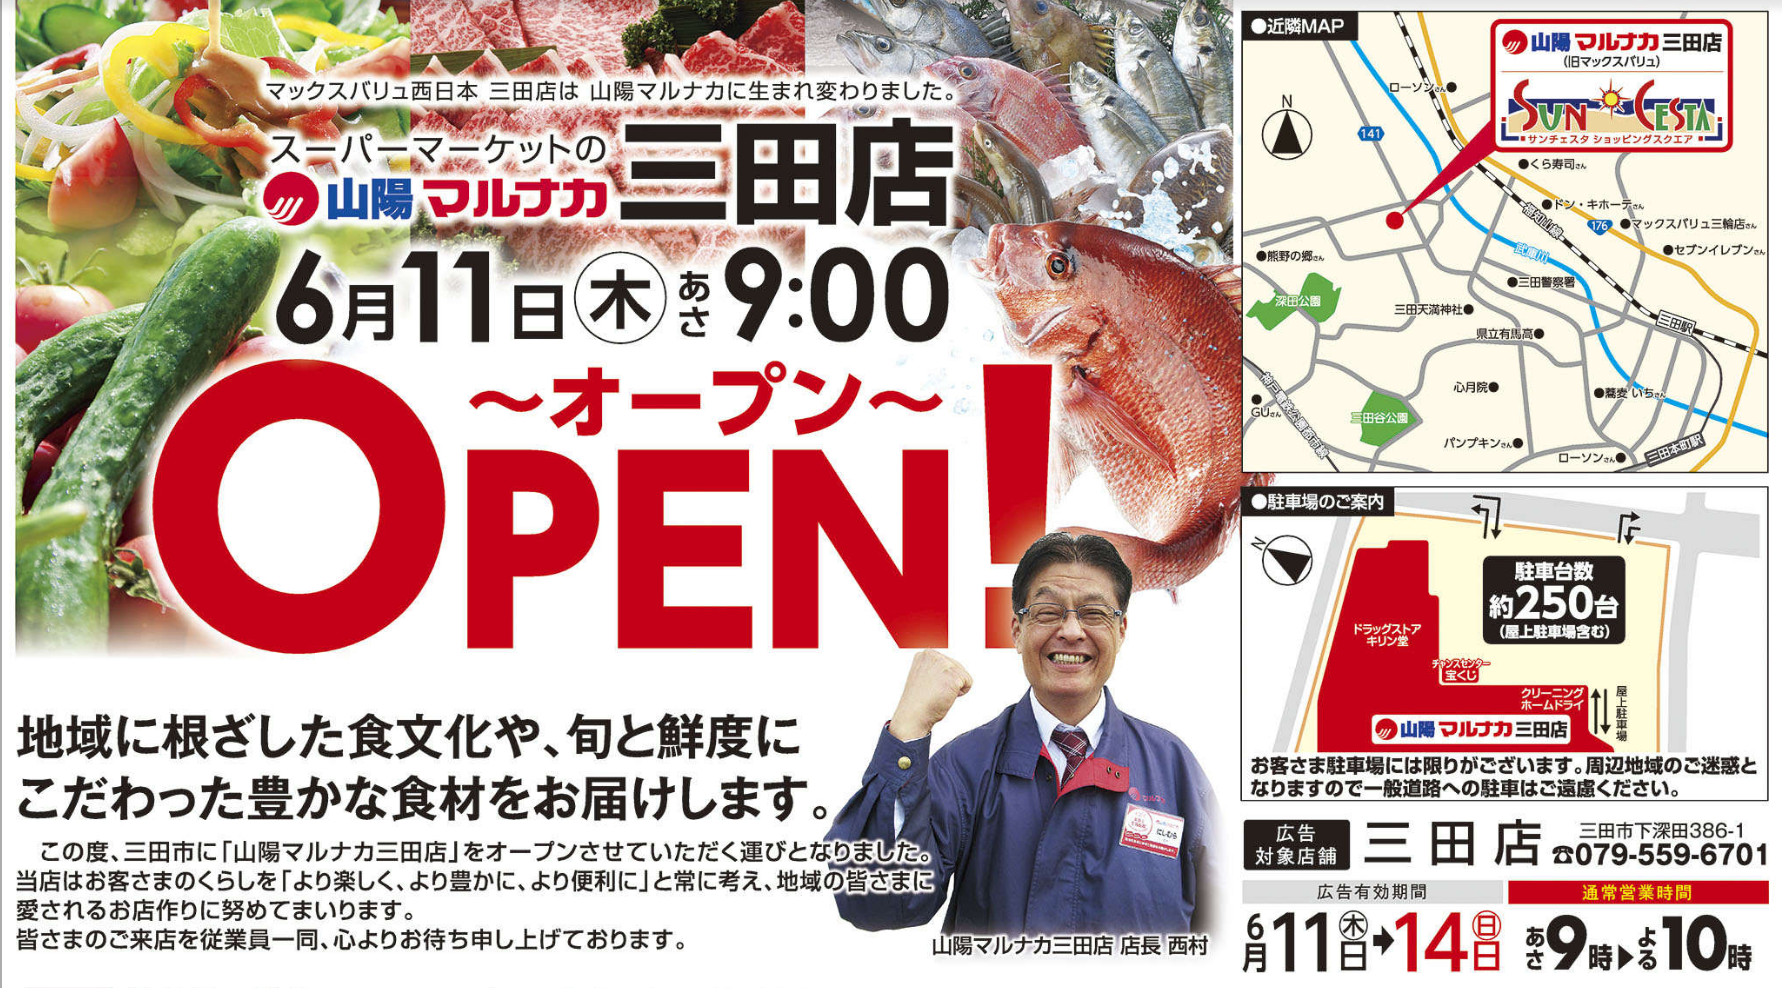 山陽マルナカ三田店 新しいスーパーが誕生しました 三田の梅さん Sanda Portal 非公式